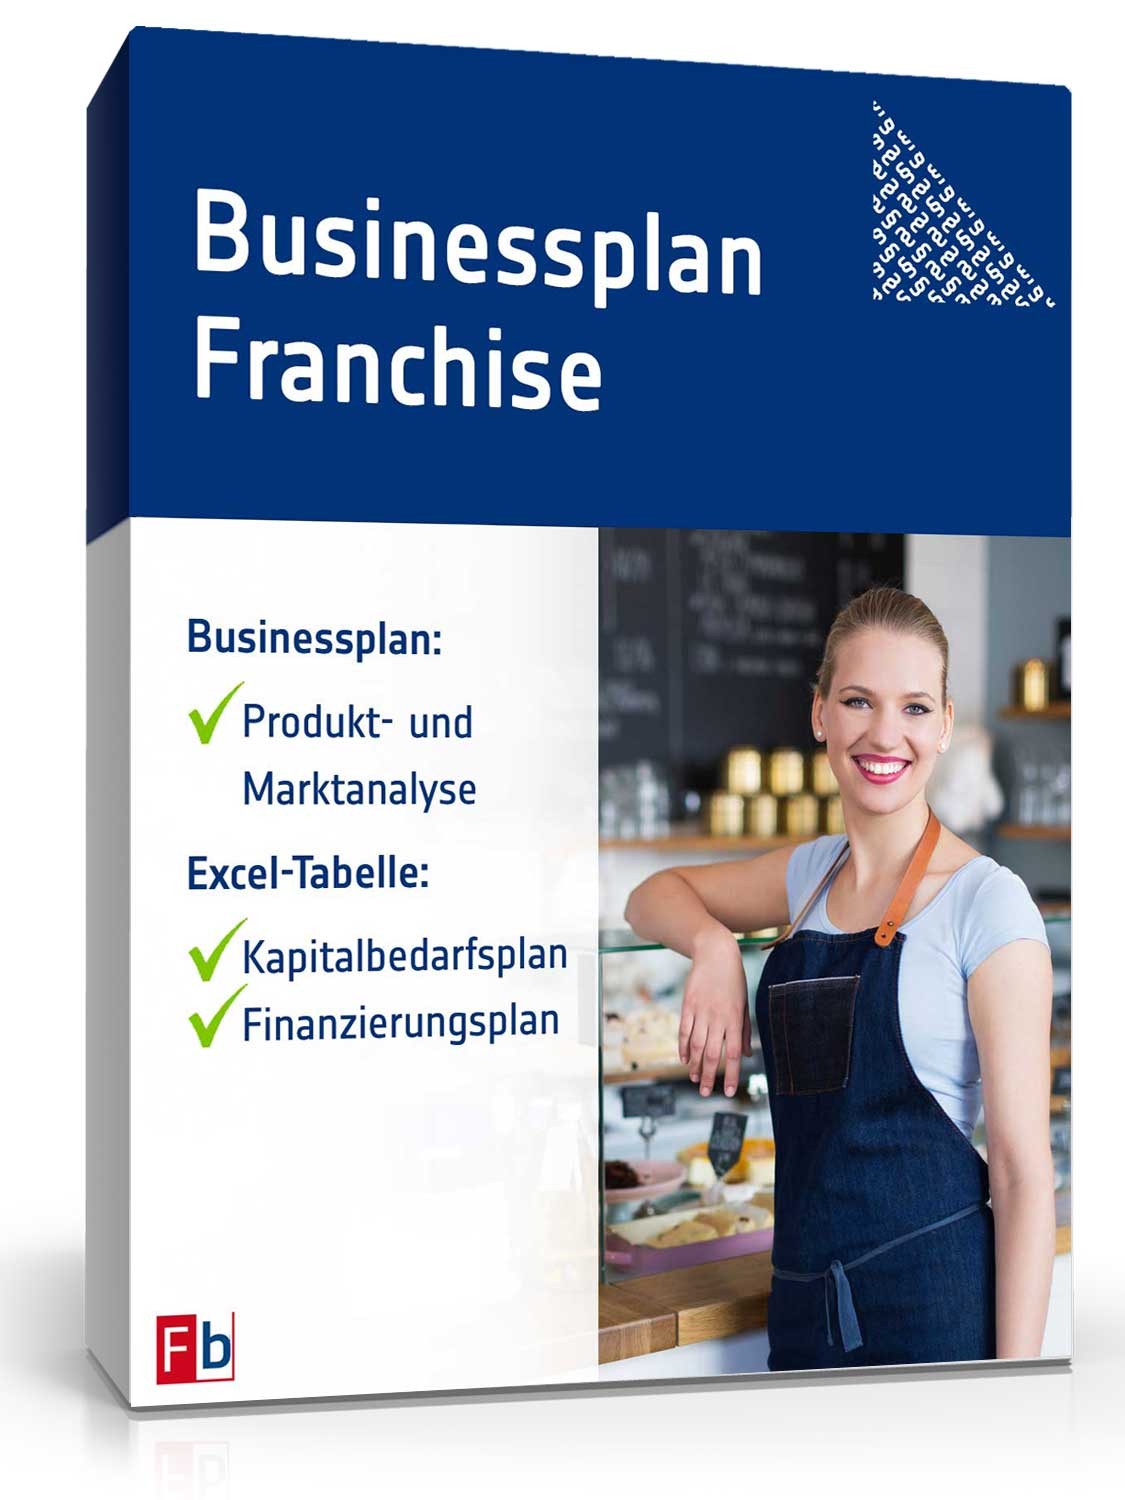 Hauptbild des Produkts: Businessplan Franchise (allgemein)